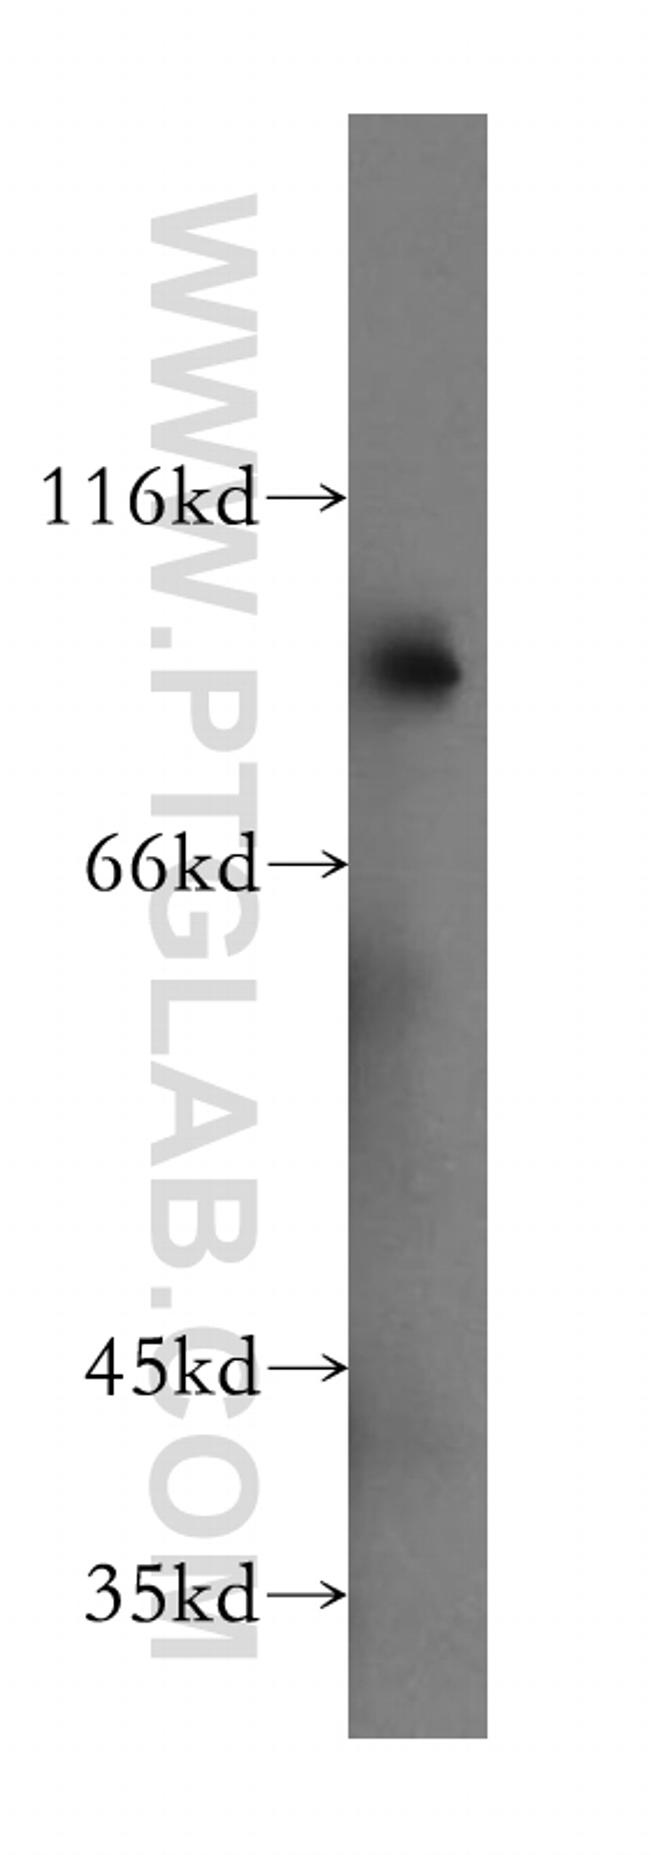 SLC3A1 Antibody in Western Blot (WB)